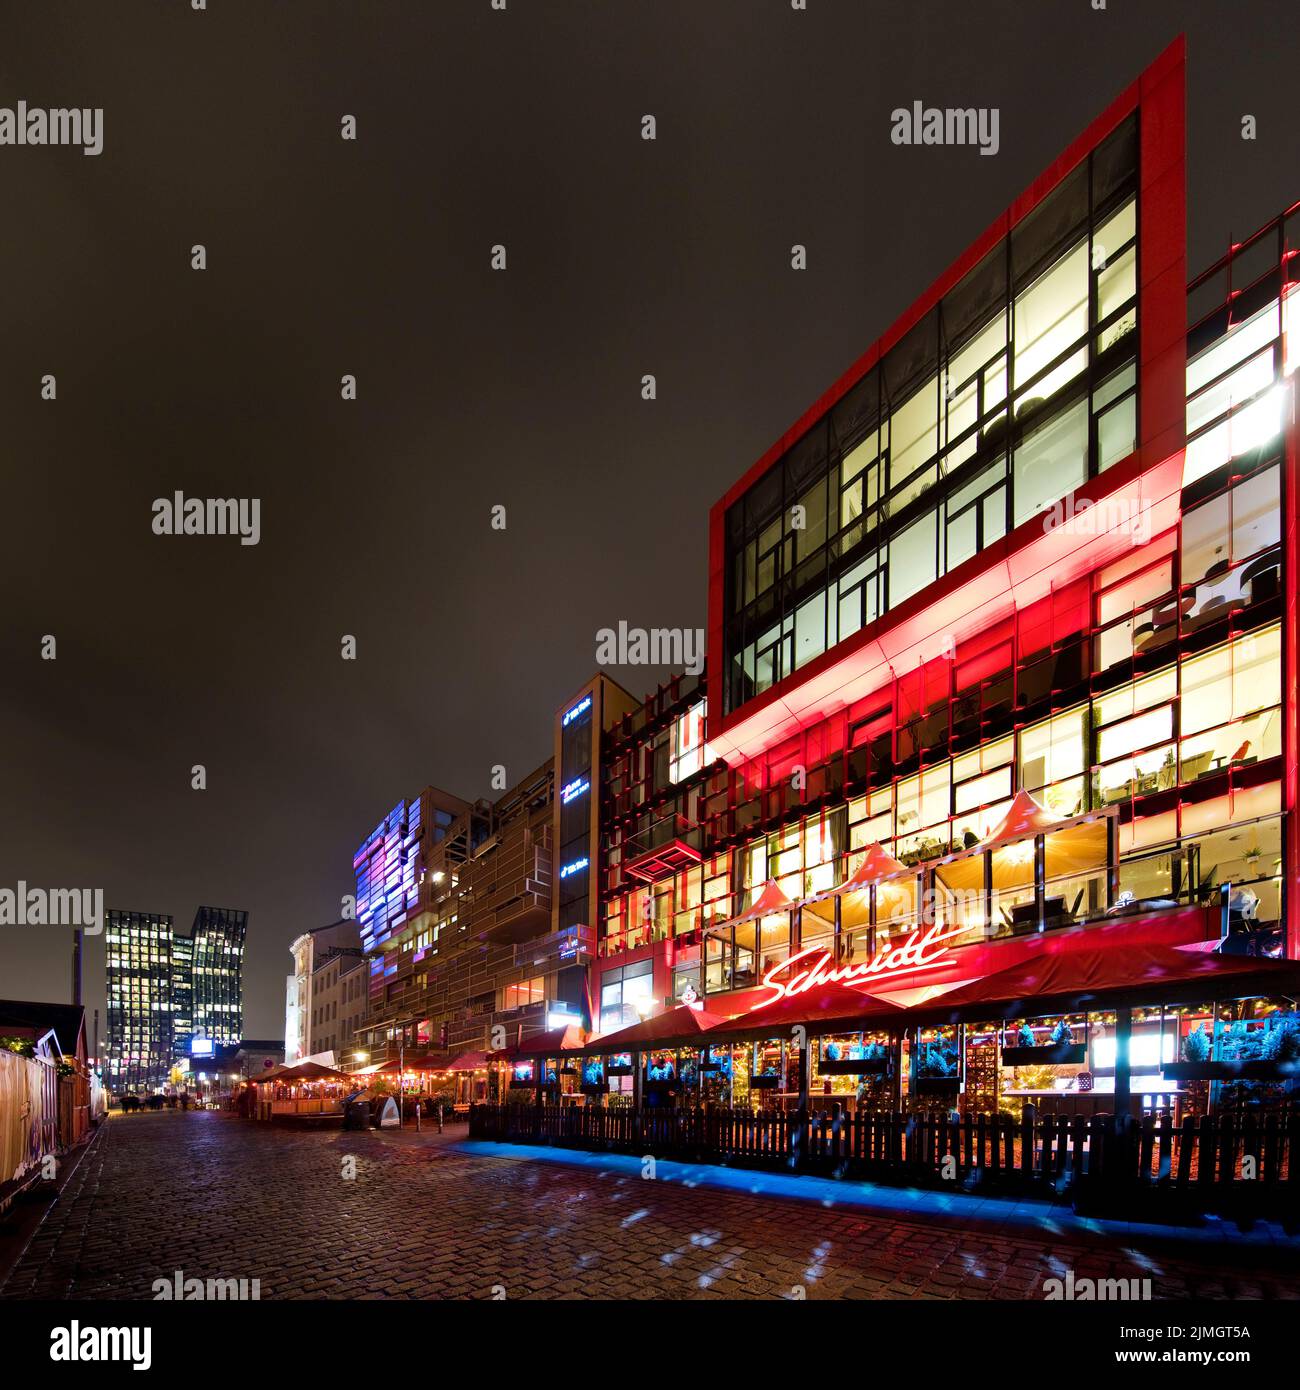 Spielbudenplatz la nuit avec le Schmidt Theatre, St. Pauli, Hambourg, Allemagne, Europe Banque D'Images